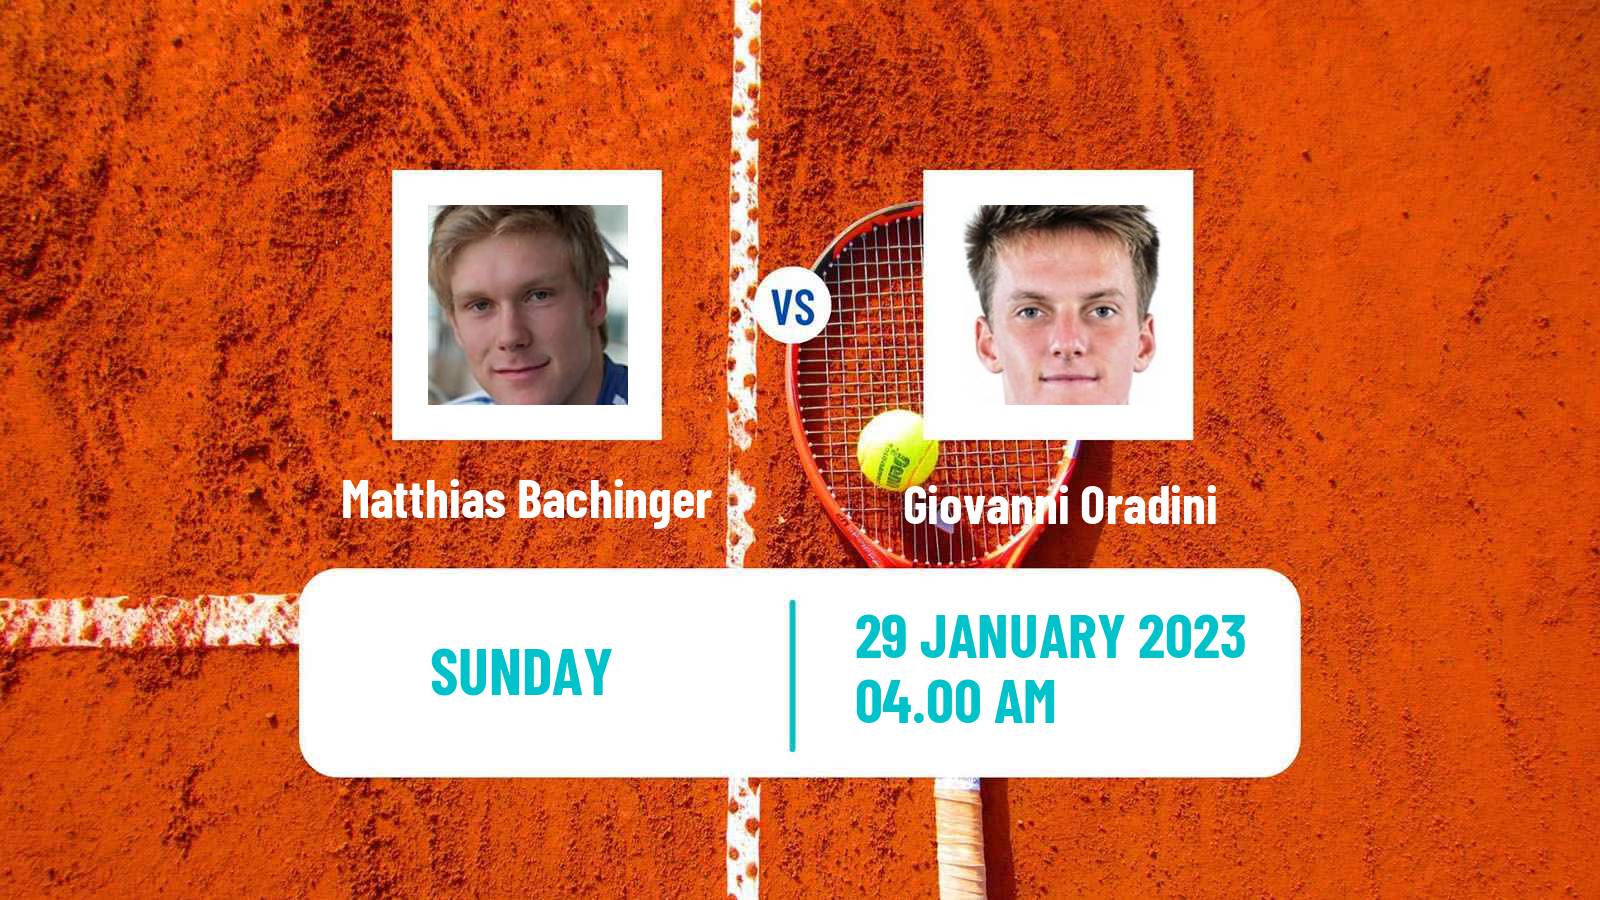 Tennis ATP Challenger Matthias Bachinger - Giovanni Oradini